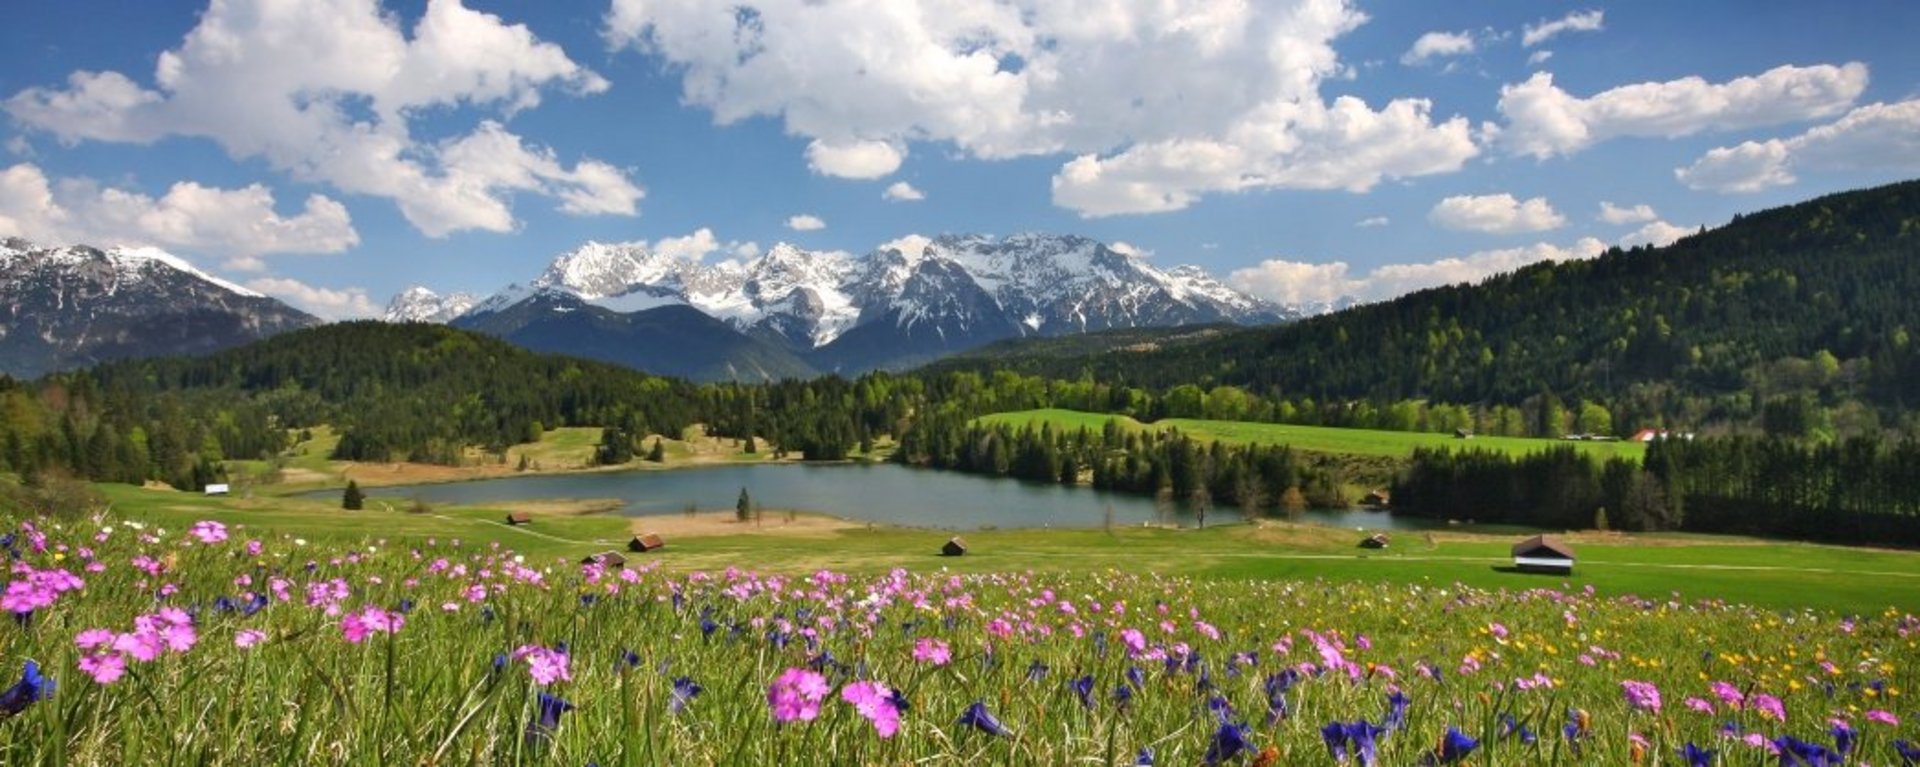 Gestern noch tief verschneit und schon morgen mit vielfältiger Blumenpracht überzogen. Das ist Frühlingserwachen in der Alpenwelt Karwendel - eine wahre Blütenpracht in allen Farben.